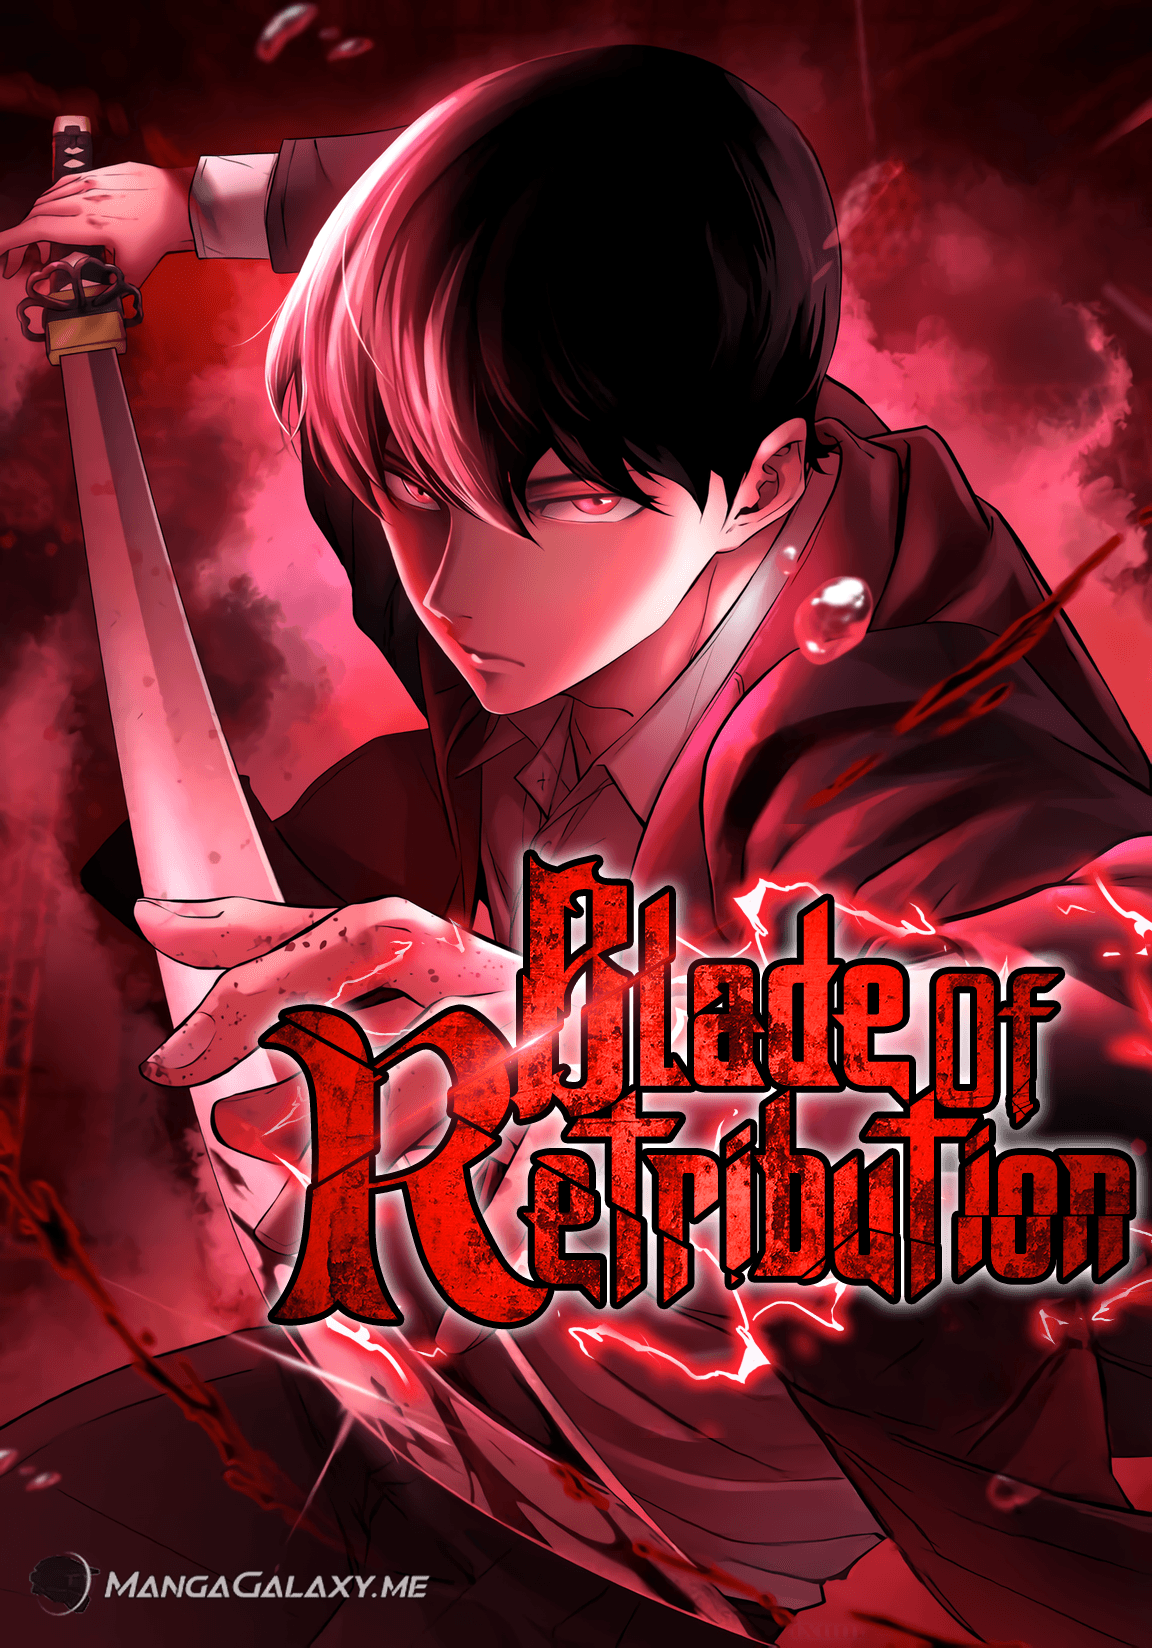 Blade of Retribution cover image